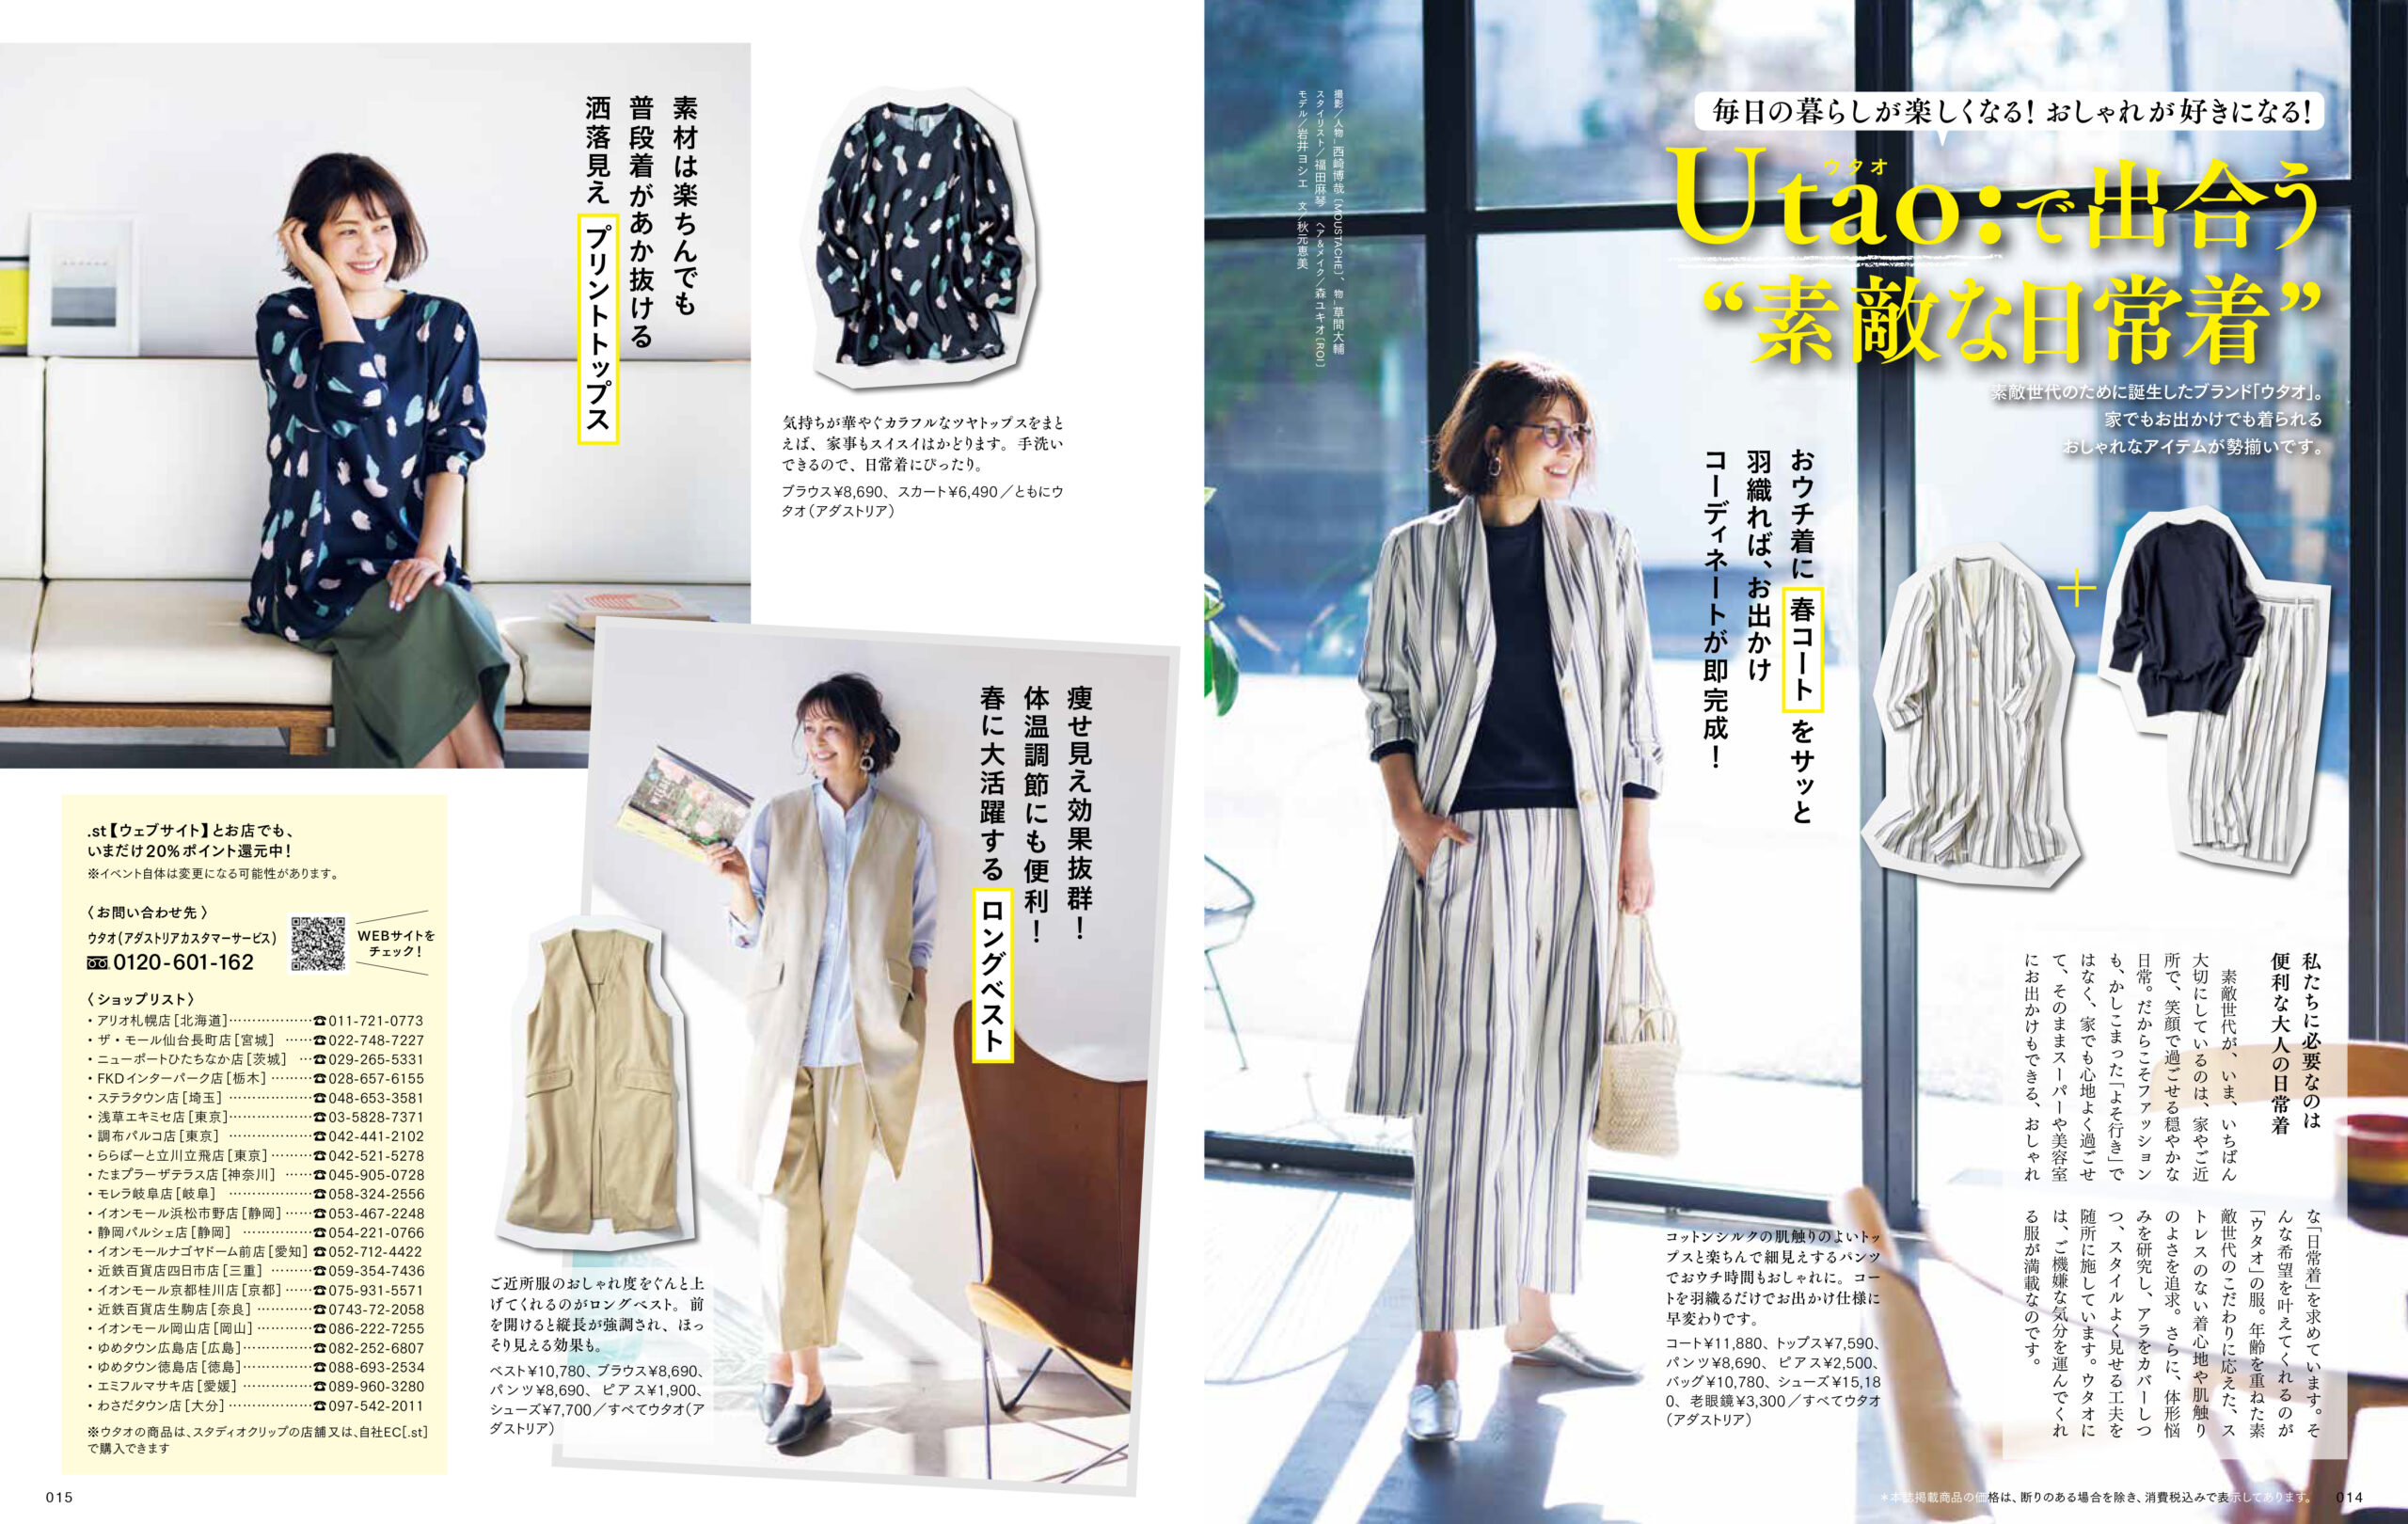 素敵なあの人 がプロデュースした60代女性向けファッションブランド Utao ウタオ が誕生 宝島社広告局